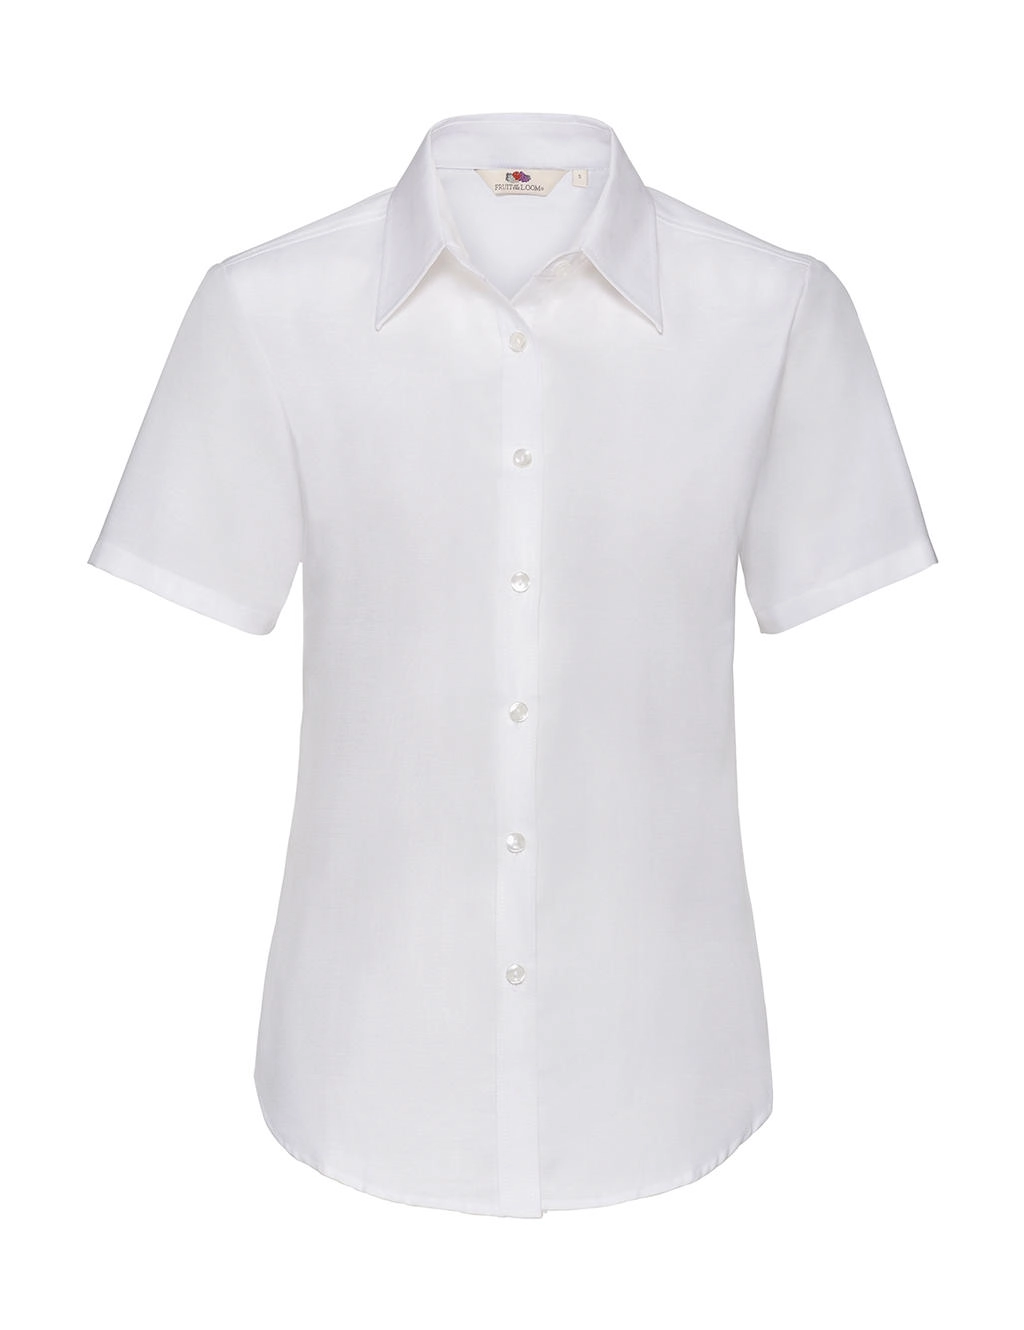 Ladies Oxford Shirt zum Besticken und Bedrucken in der Farbe White mit Ihren Logo, Schriftzug oder Motiv.